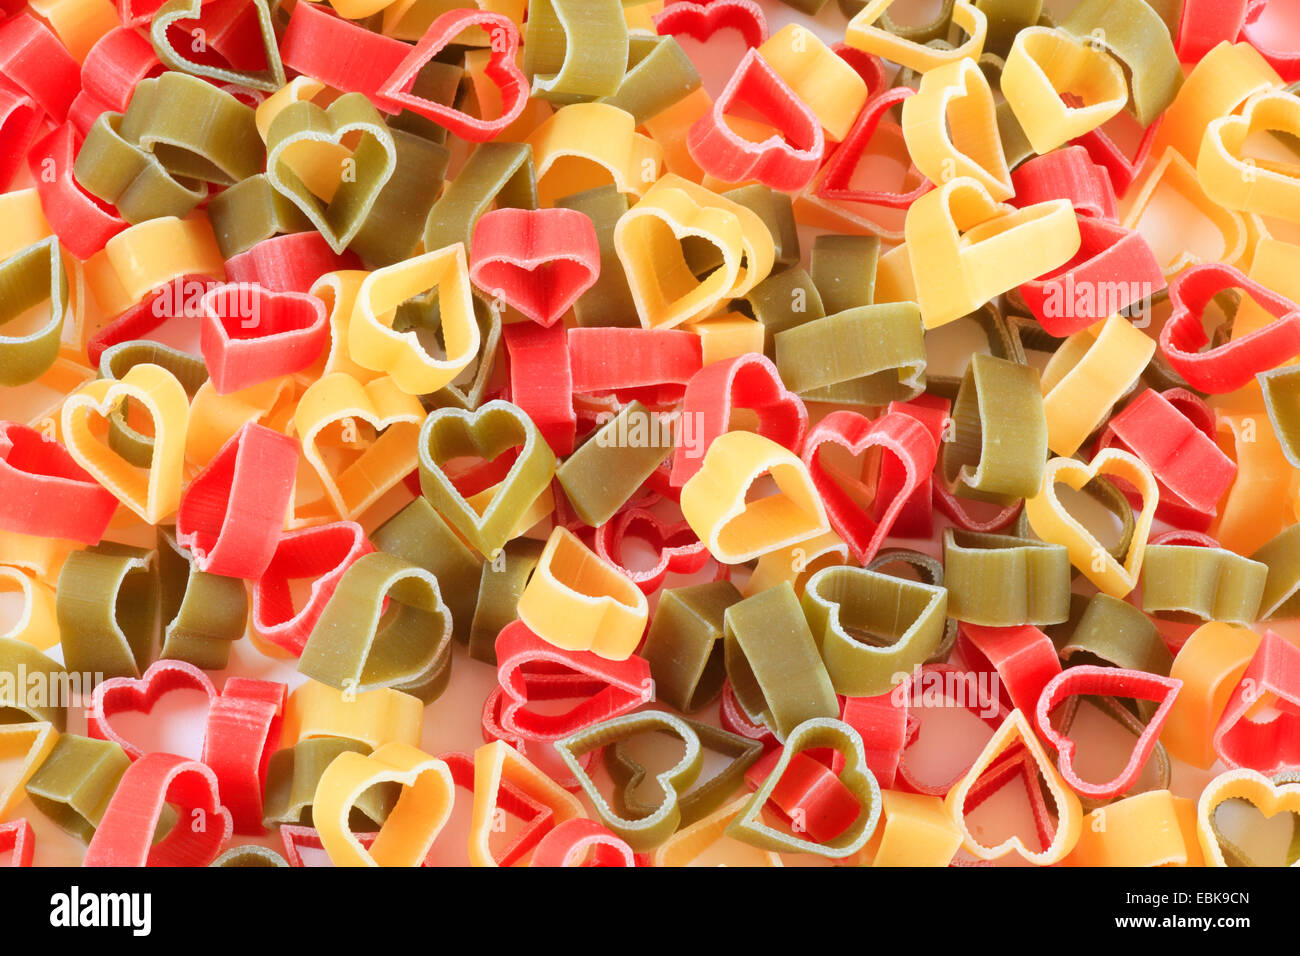 Italien De Pâtes En Forme De Coeur Image stock - Image du coloré